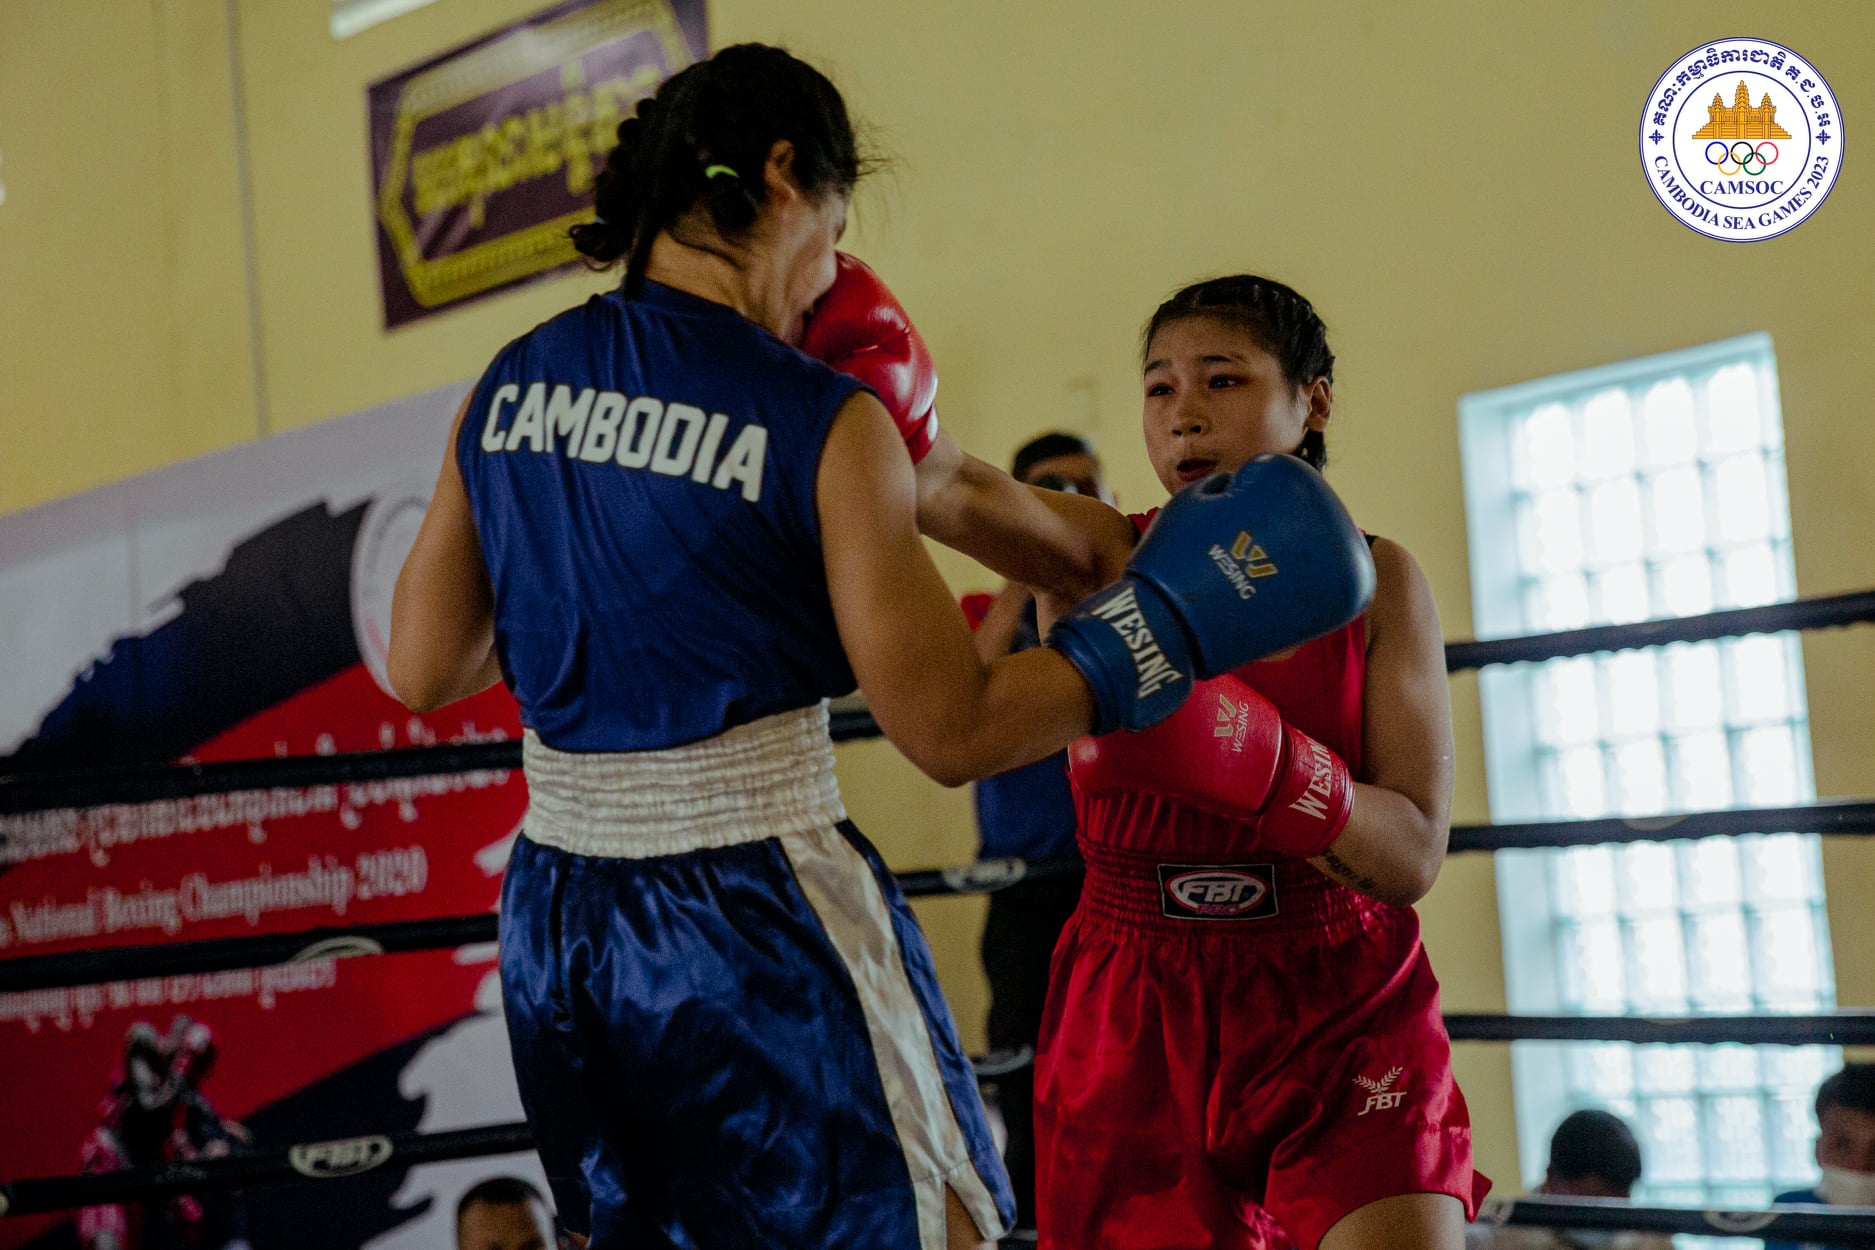 ប្រដាល់សកលគ្រោងរៀបចំការប្រកួតដោយខ្លួនឯង  ពង្រឹងសមត្ថភាពអត្តពលិកជម្រើសជាតិត្រៀមប្រជែងមេដាយនៅវៀតណាម ចុងឆ្នាំ២០២១ –  Cambodia Heart Sports